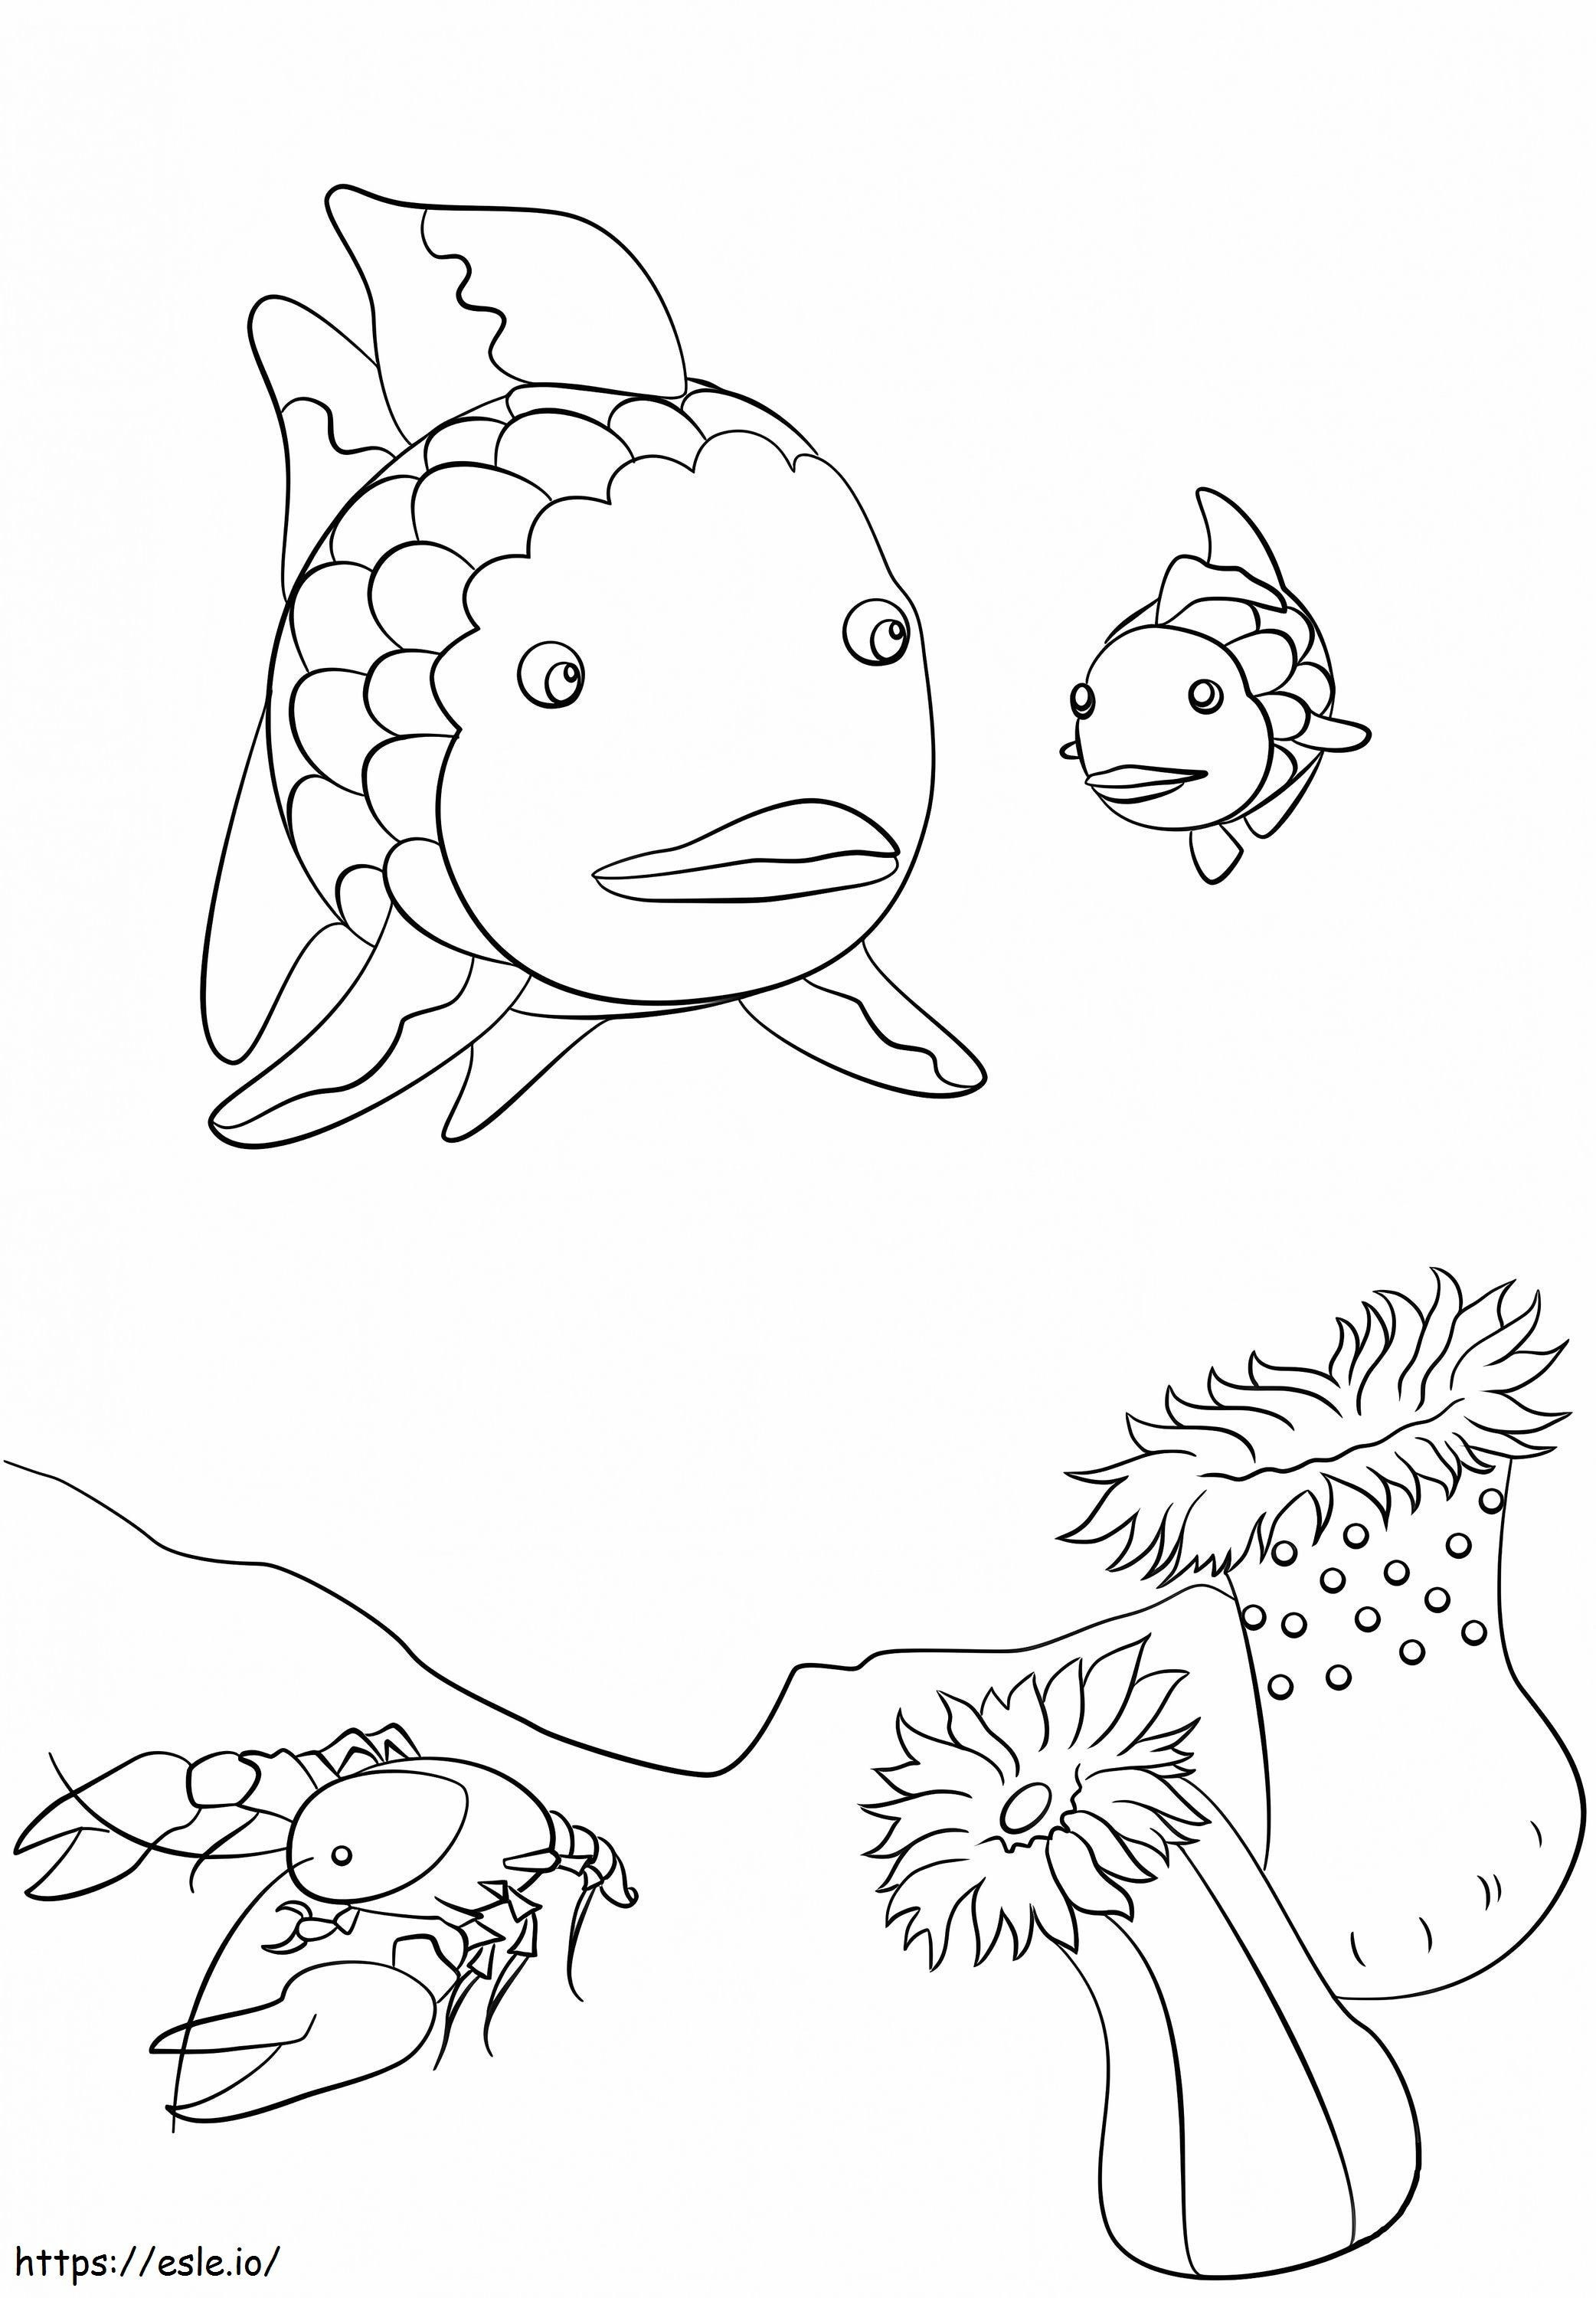 1576832011 Regenbogenfisch, Langusten und kleine Fische ausmalbilder